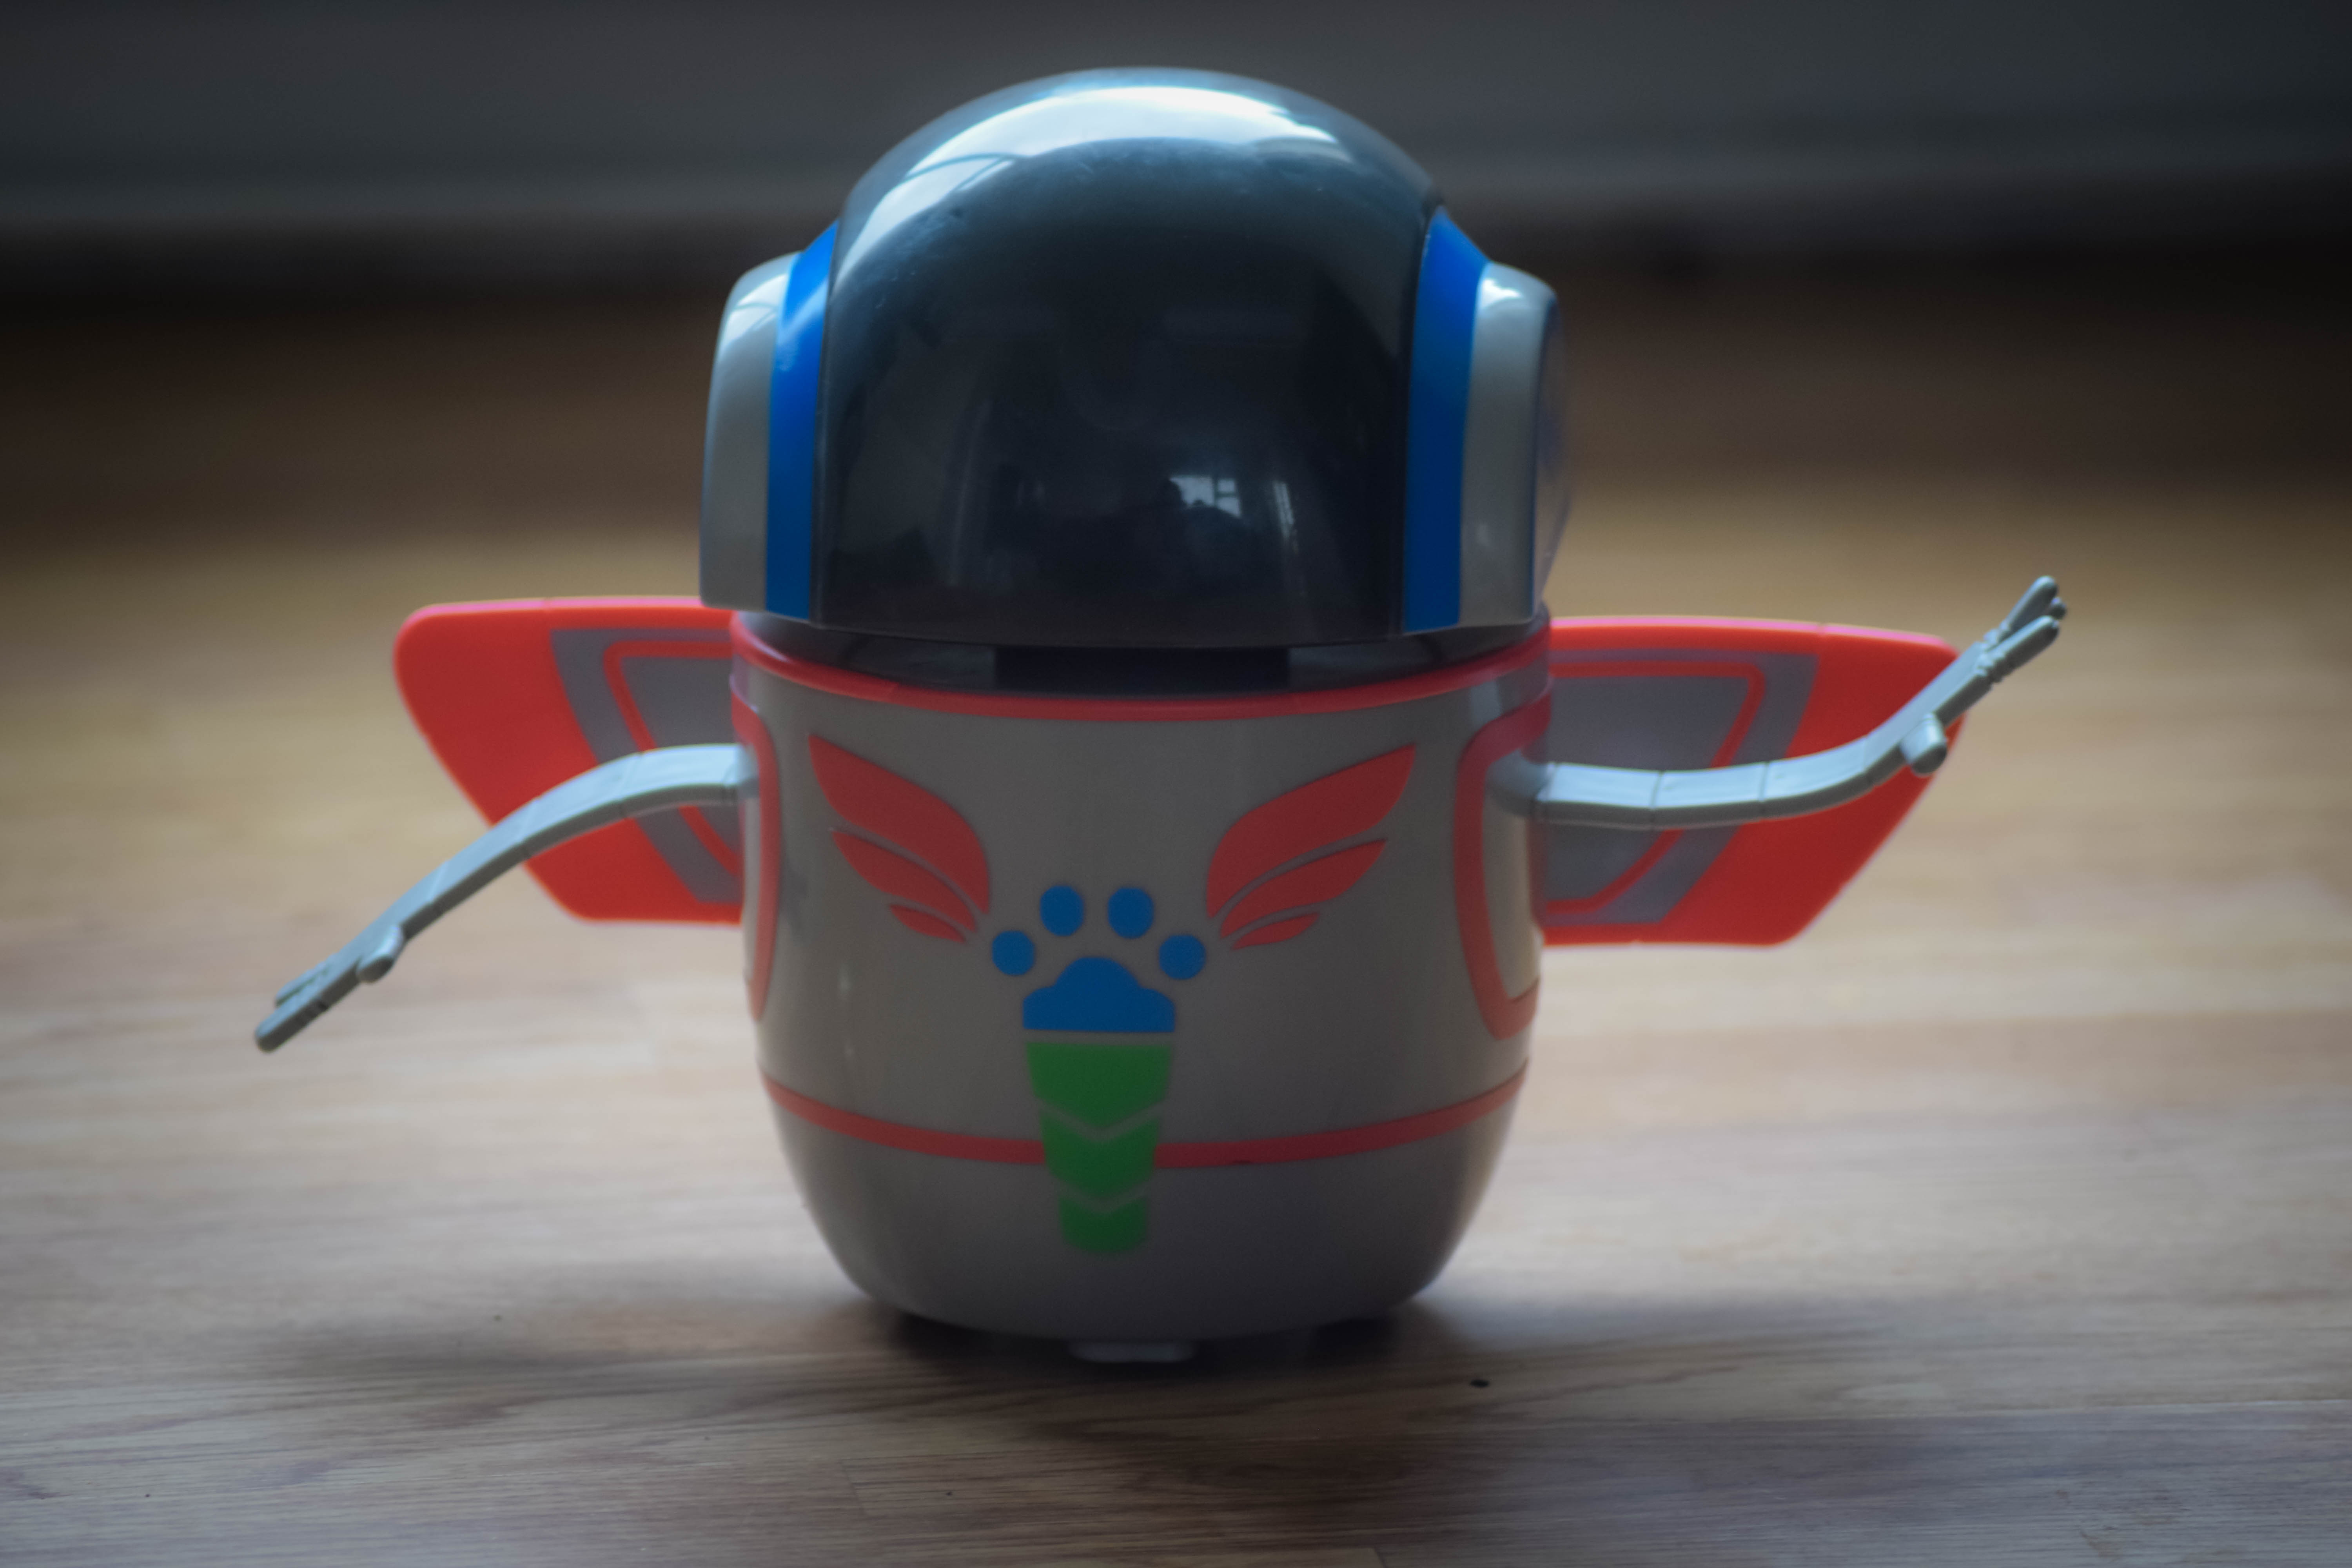 PJ Masks Lights and Sounds Robot